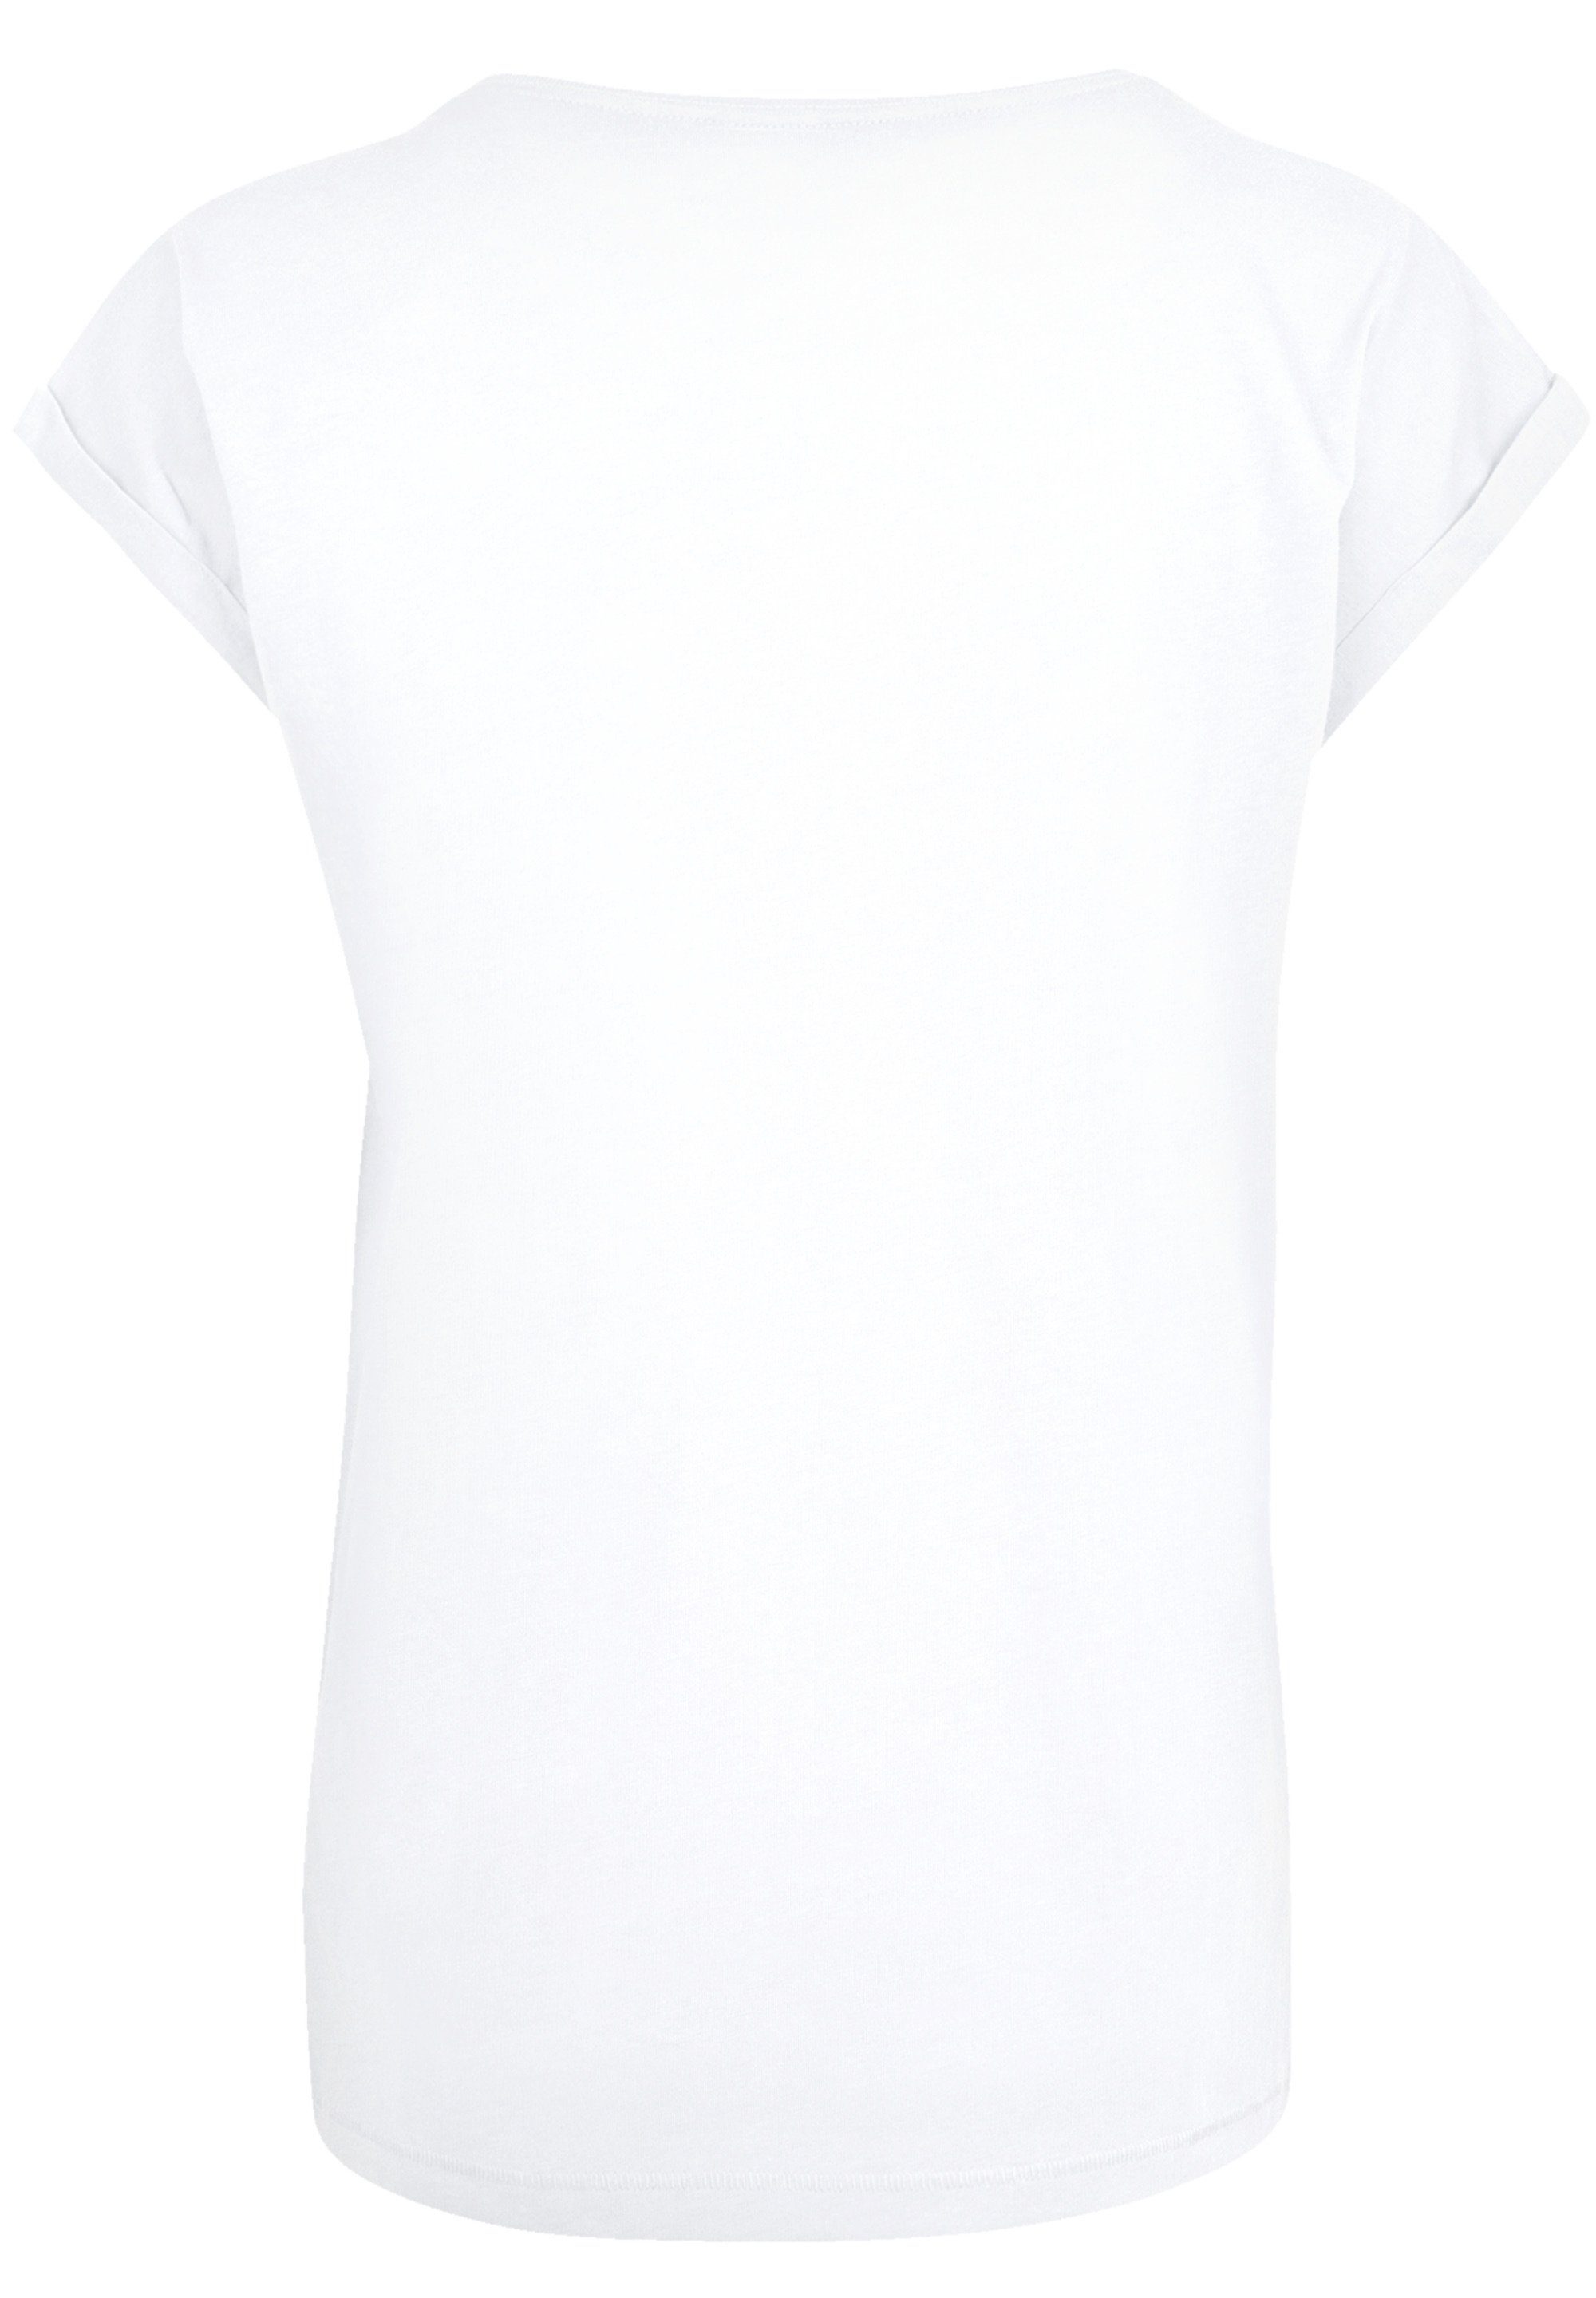 Together der T-Shirt F4NT4STIC Premium Löwen Disney Qualität König white